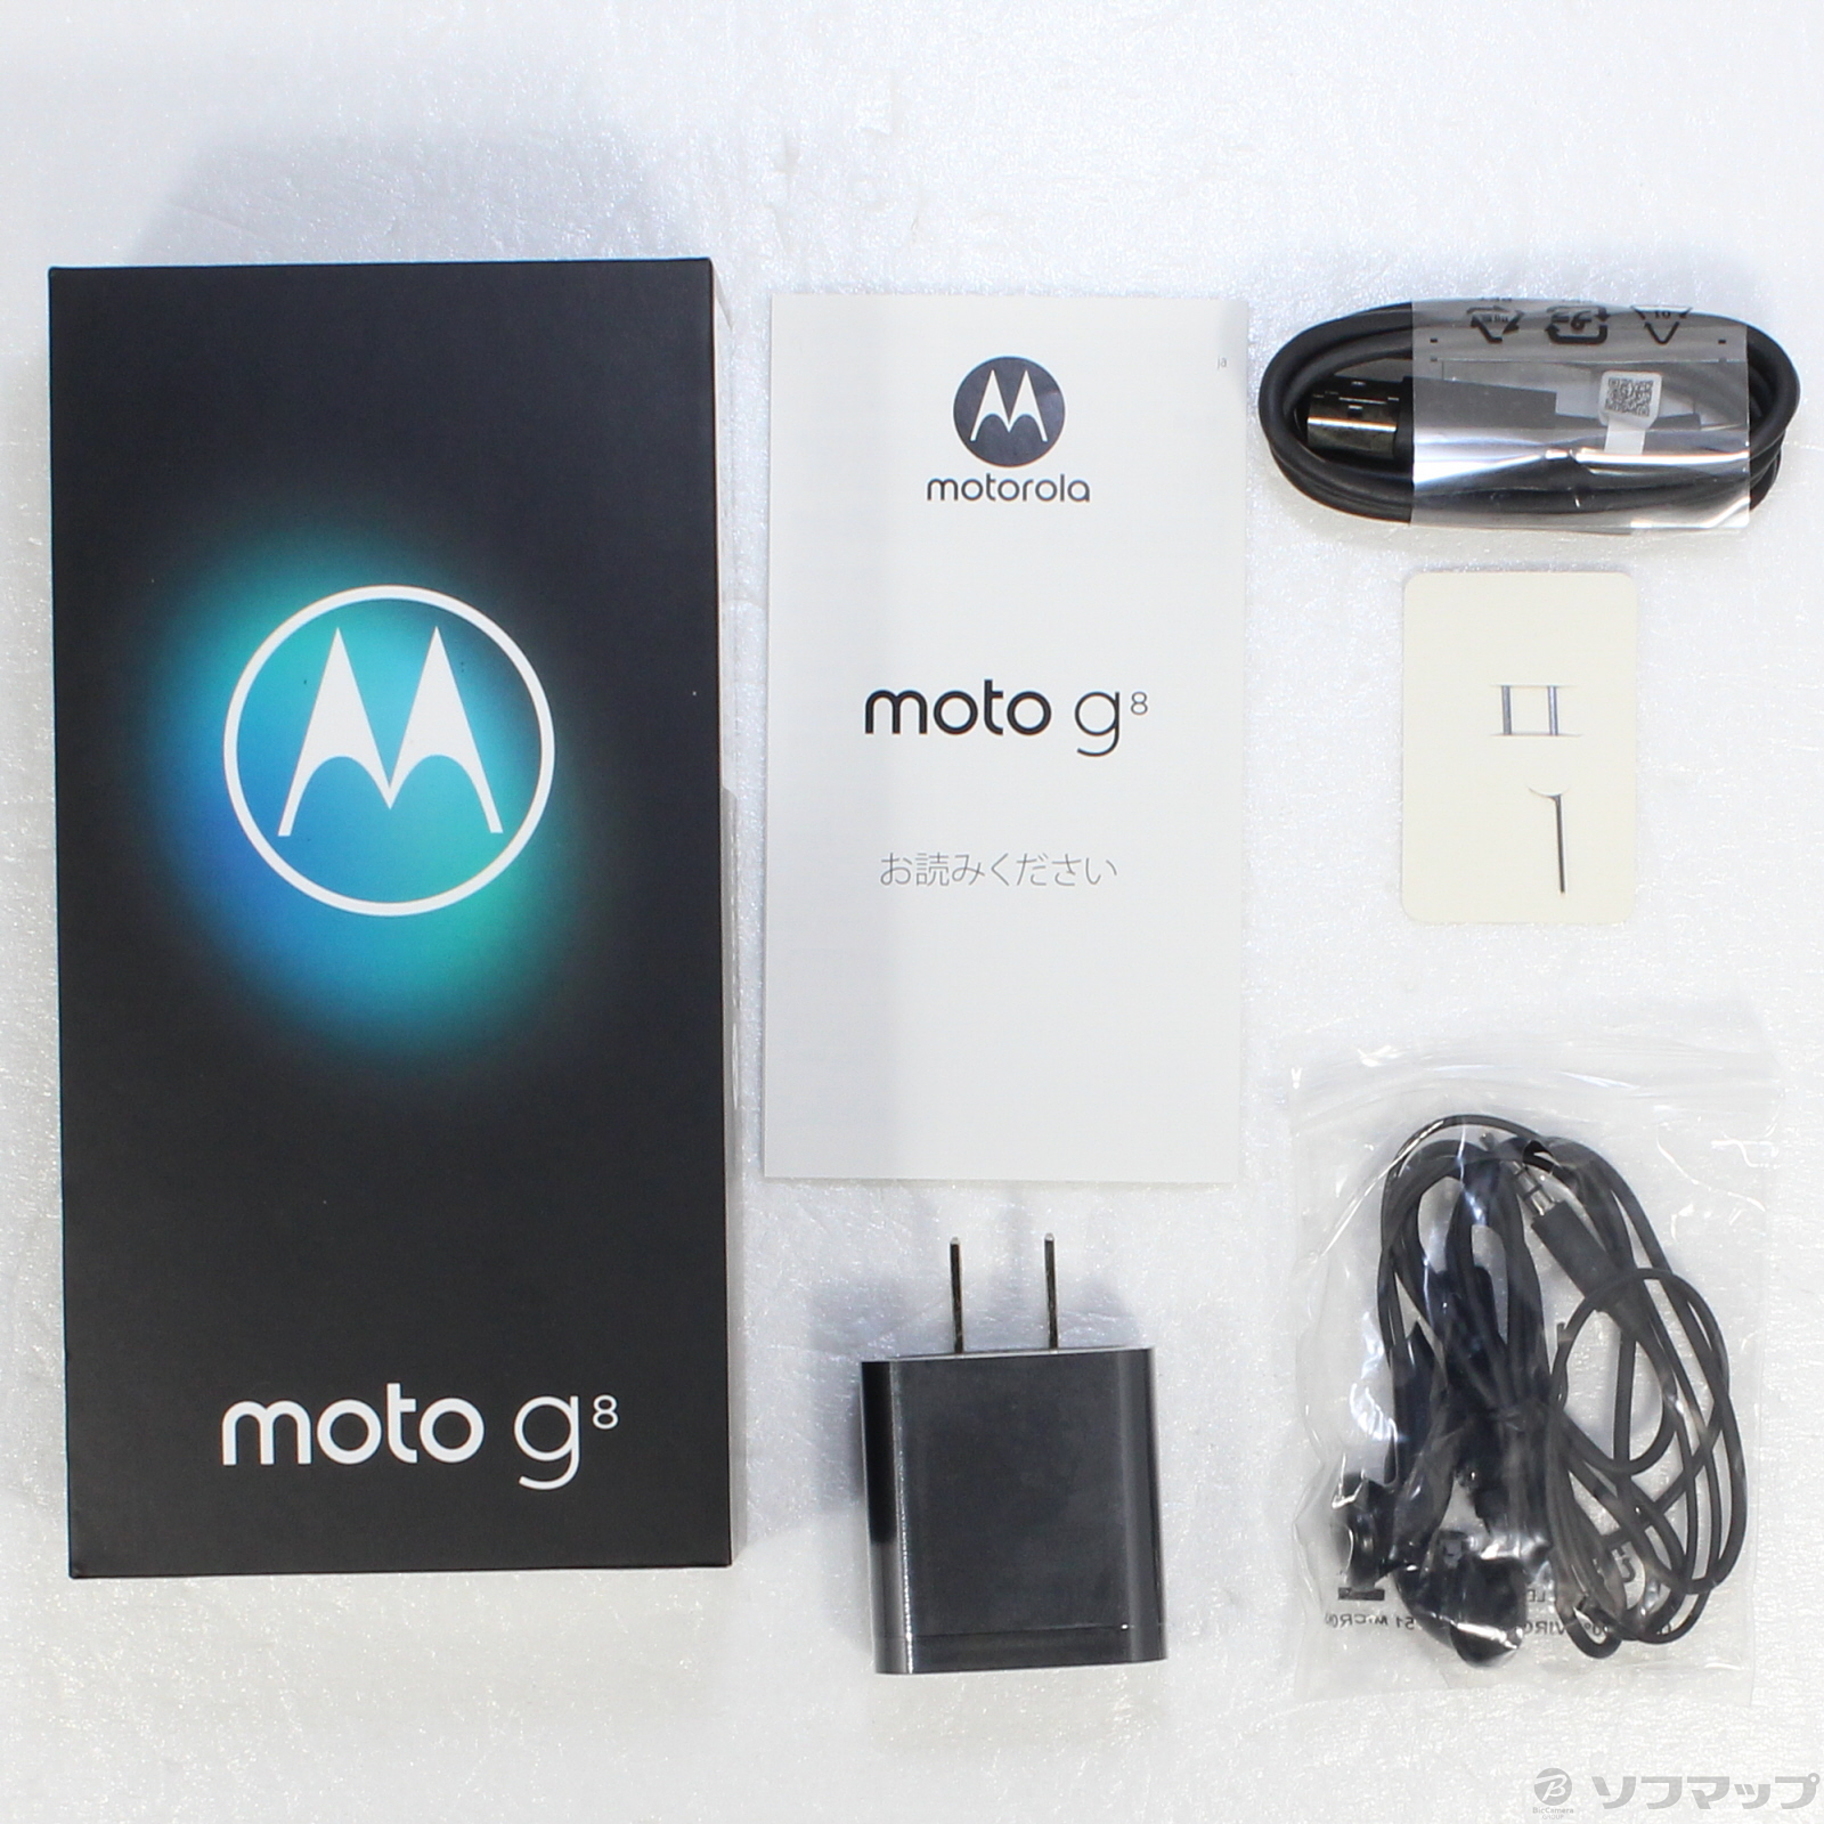 Motorola モトローラ simフリースマホ moto g8 ホワイト